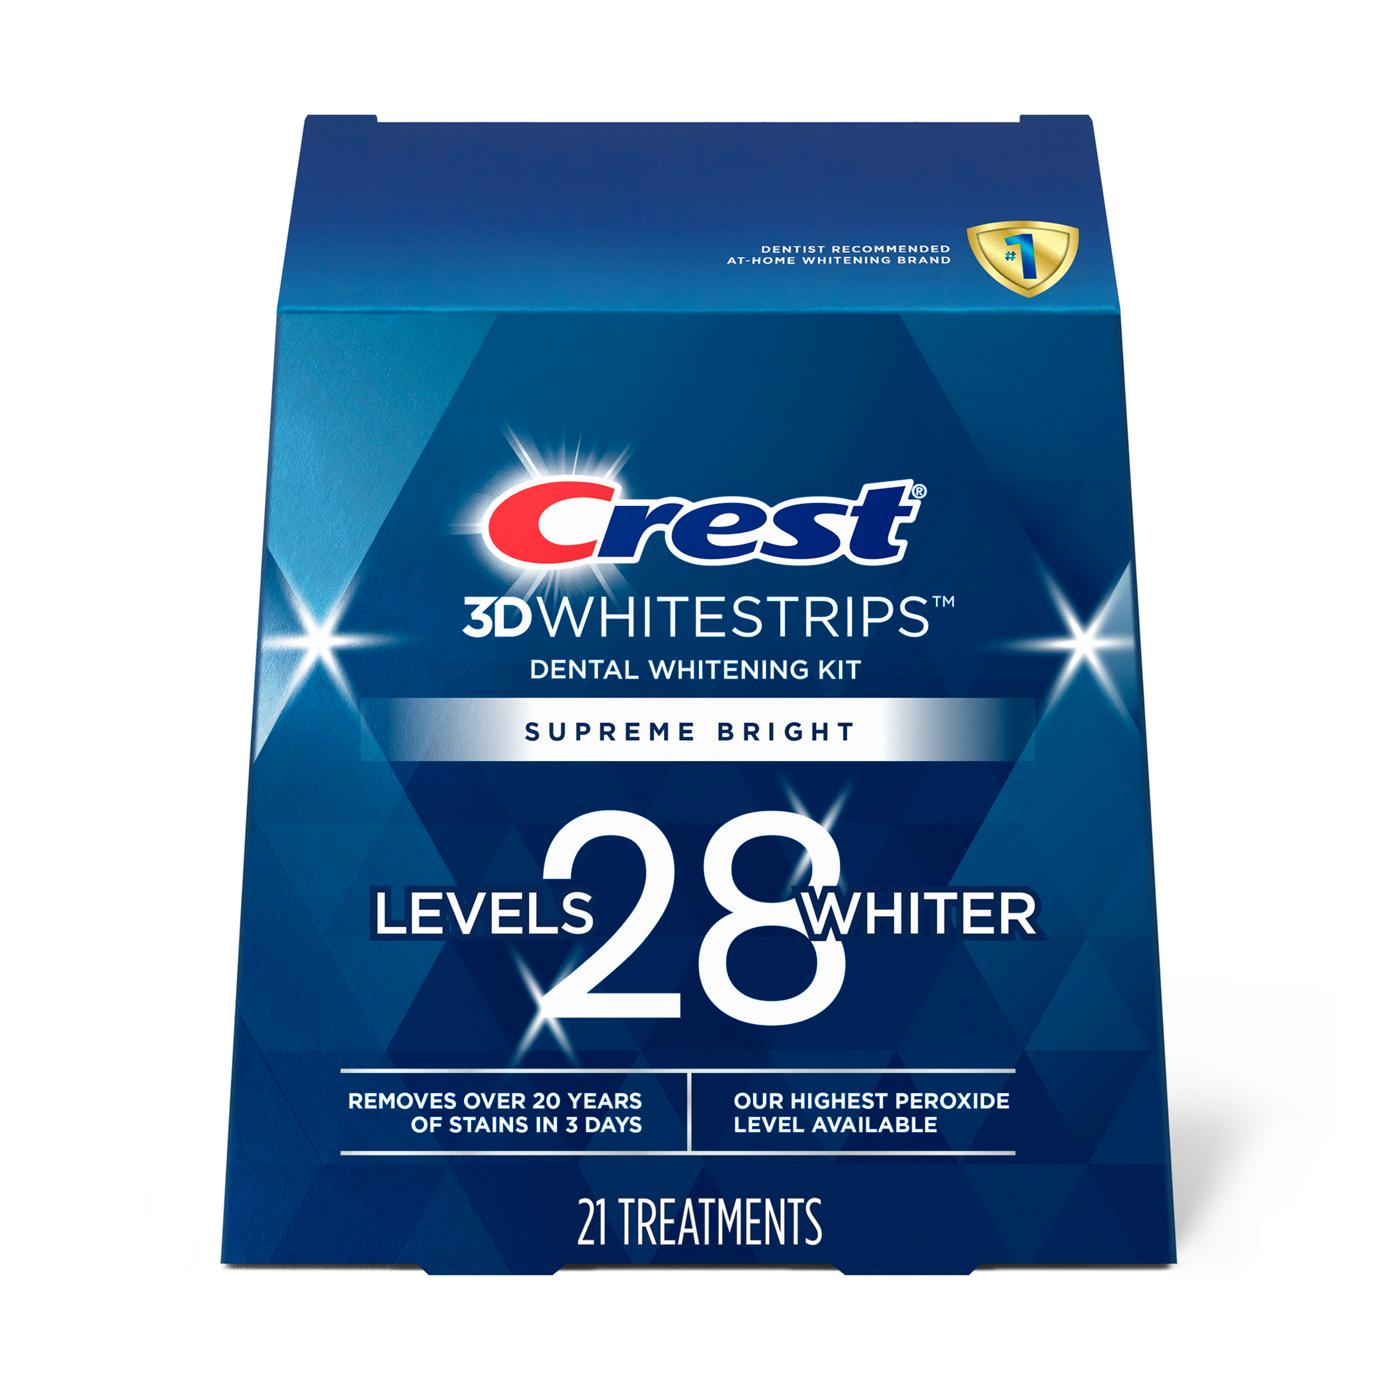 Crest 3D Whitestrips Supreme Bright Dental Whitening Kit; image 1 of 7